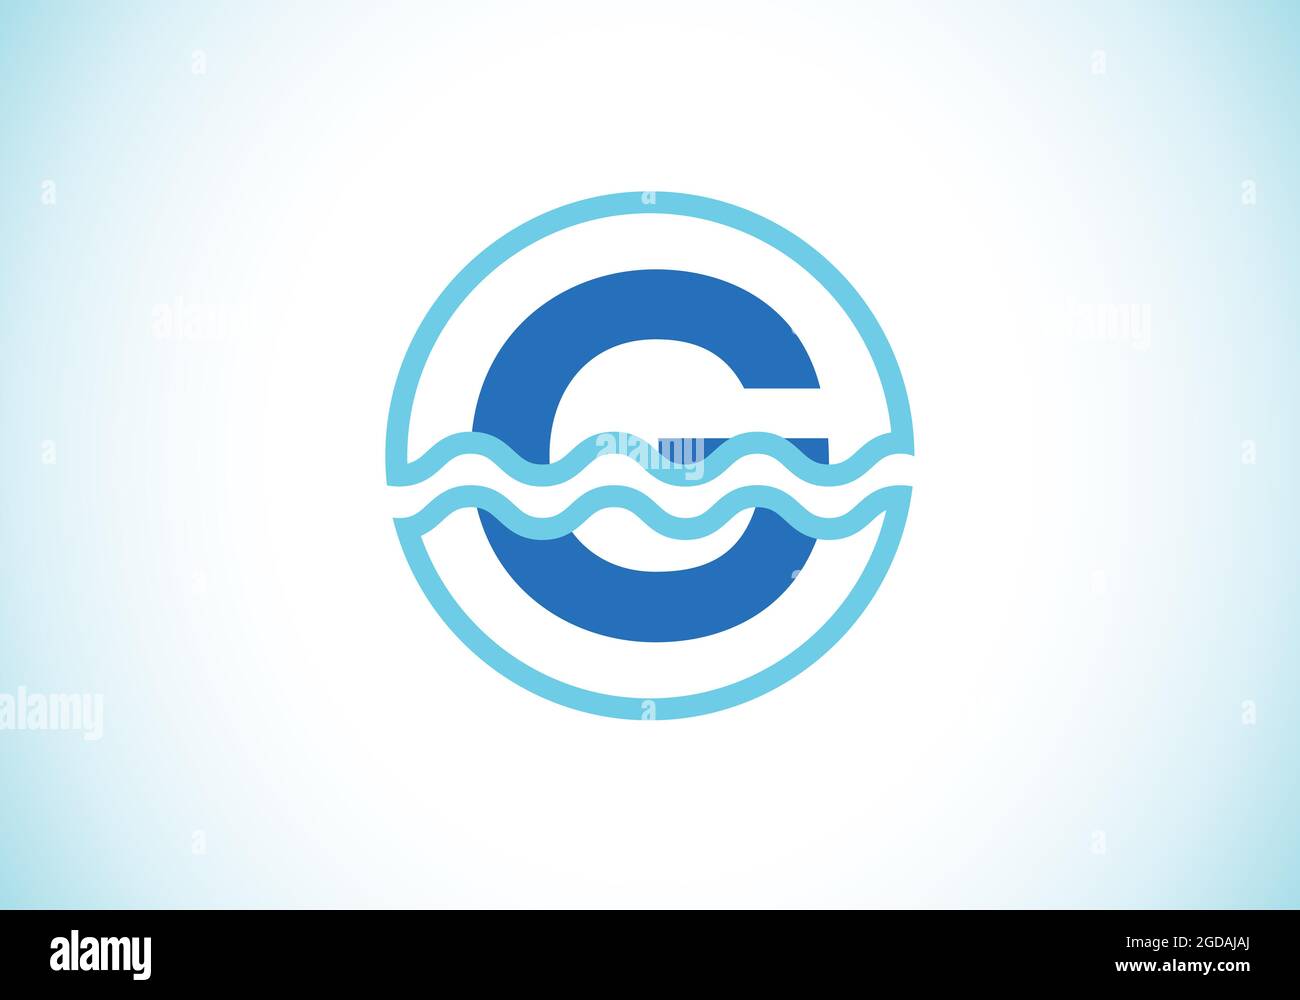 Anfängliches G-Monogramm-Alphabet in einem Kreis mit Wasserwellen. Wasserwellen-Logo-Design. Logo für den Ozean, das Seegeschäft und die Unternehmensidentität Stock Vektor